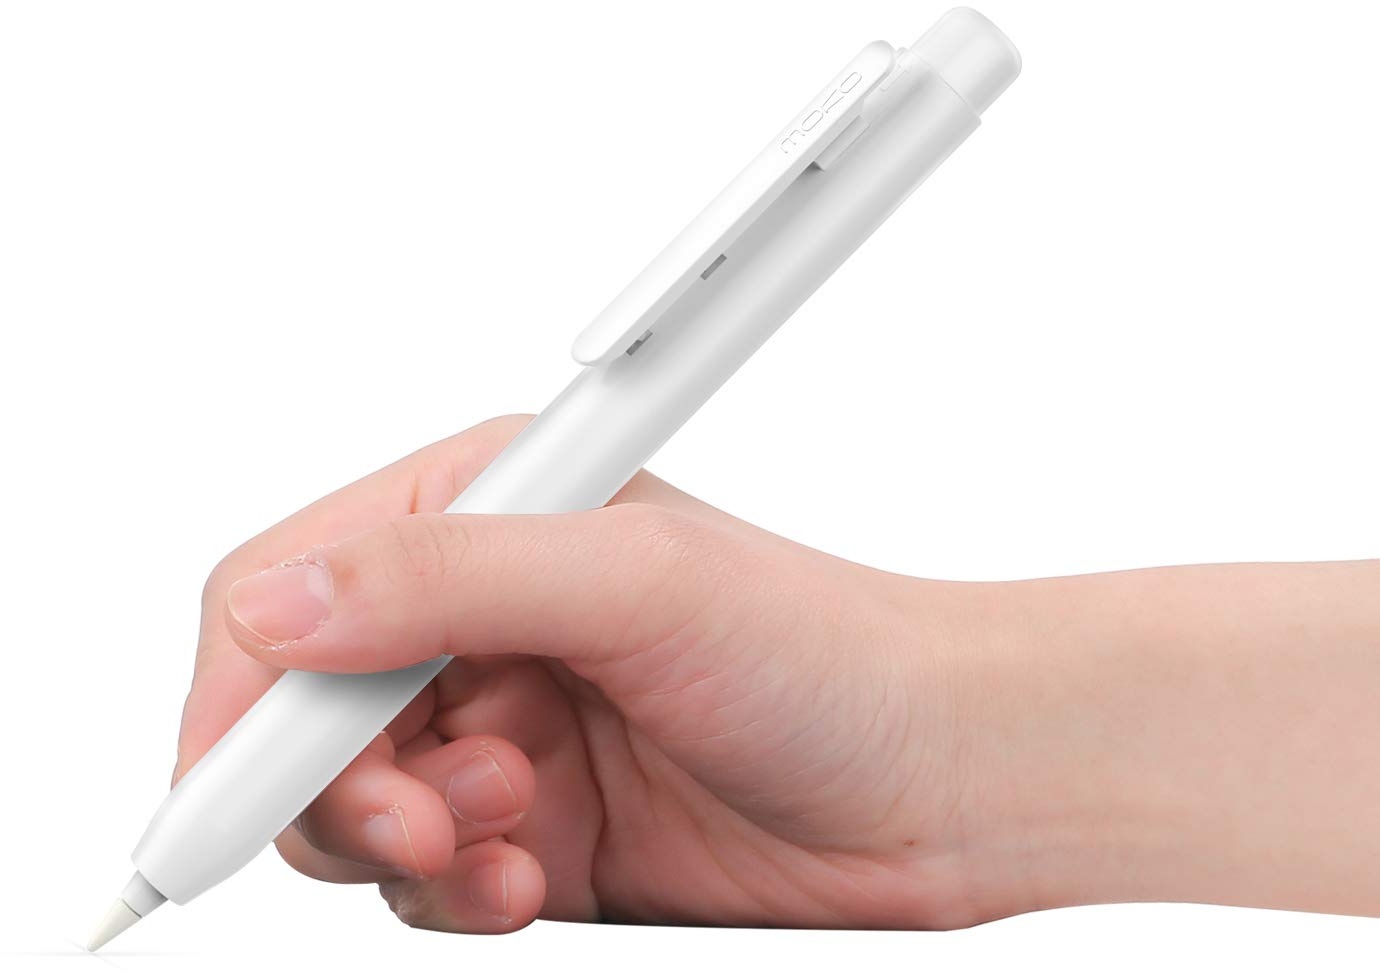 MoKo Hülle Kompatibel mit Apple Pencil 1. Generation, Retractable Ausziehbare Schutzhülle mit Apple Pencil Hülle, Stifthalter mit Stabilem Clip, rutschfeste Einfarbige Stifthülle, Weiß